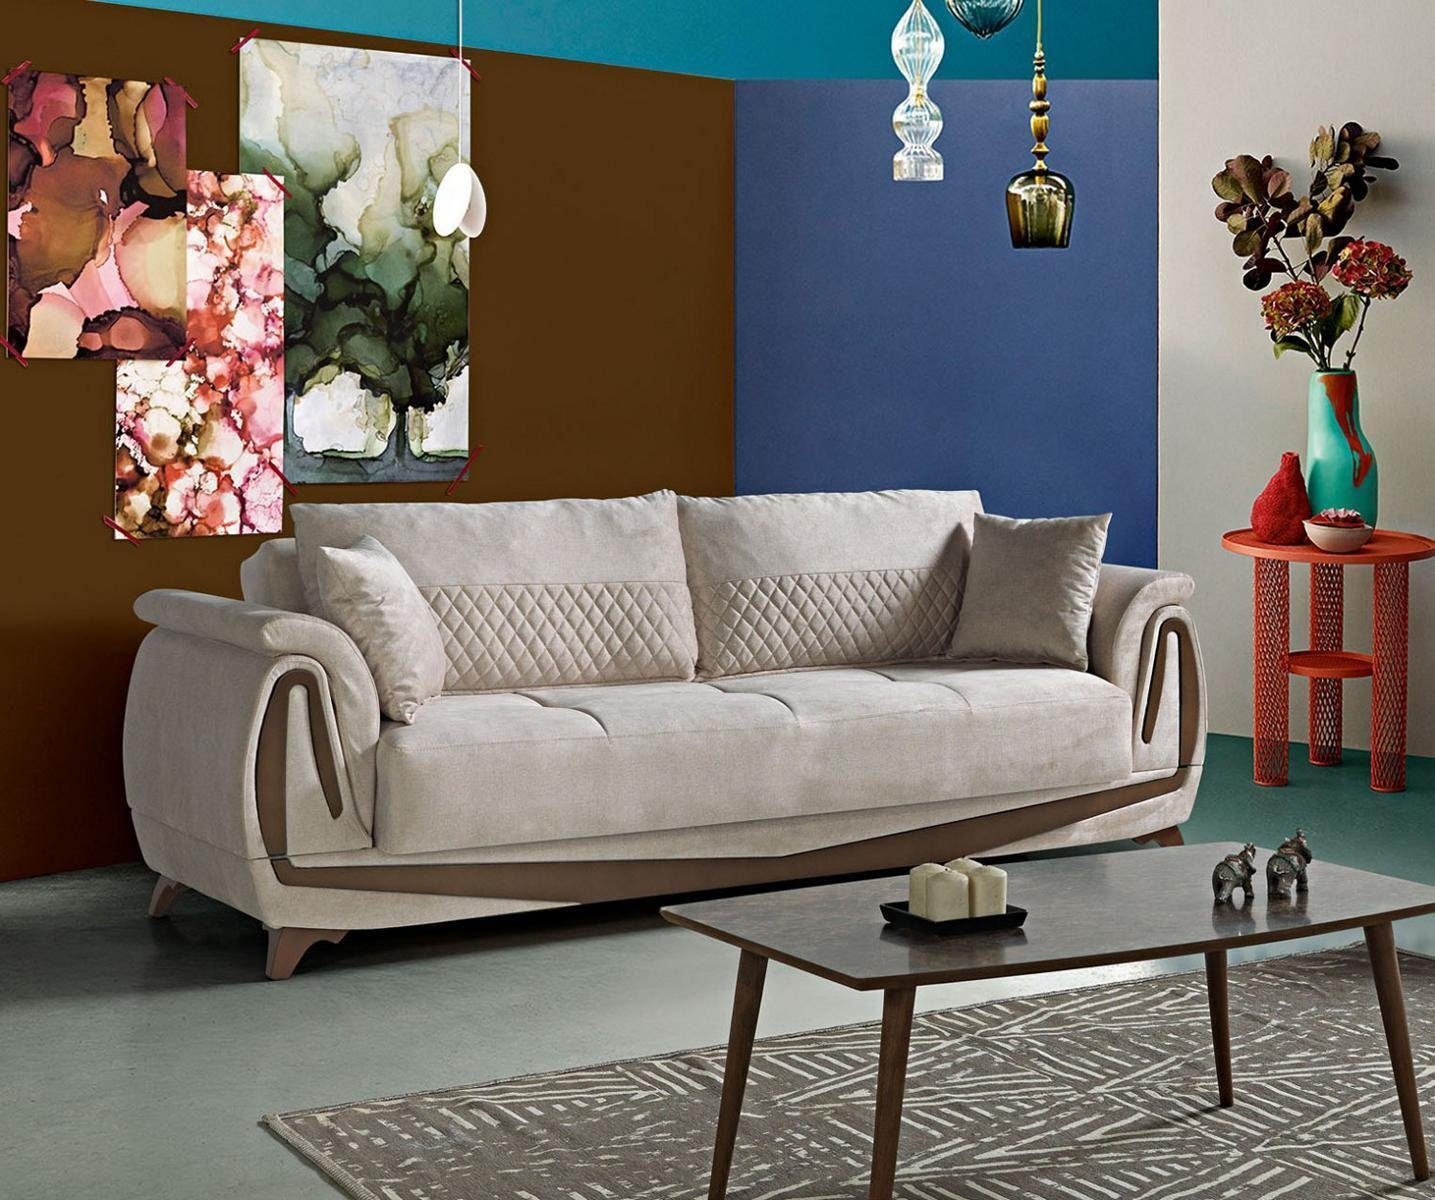 JVmoebel Sofa 230cm Luxus Möbel Textil, Wohnzimmer Sofa Sofa Sitzer 3 Europe In Made Elegant